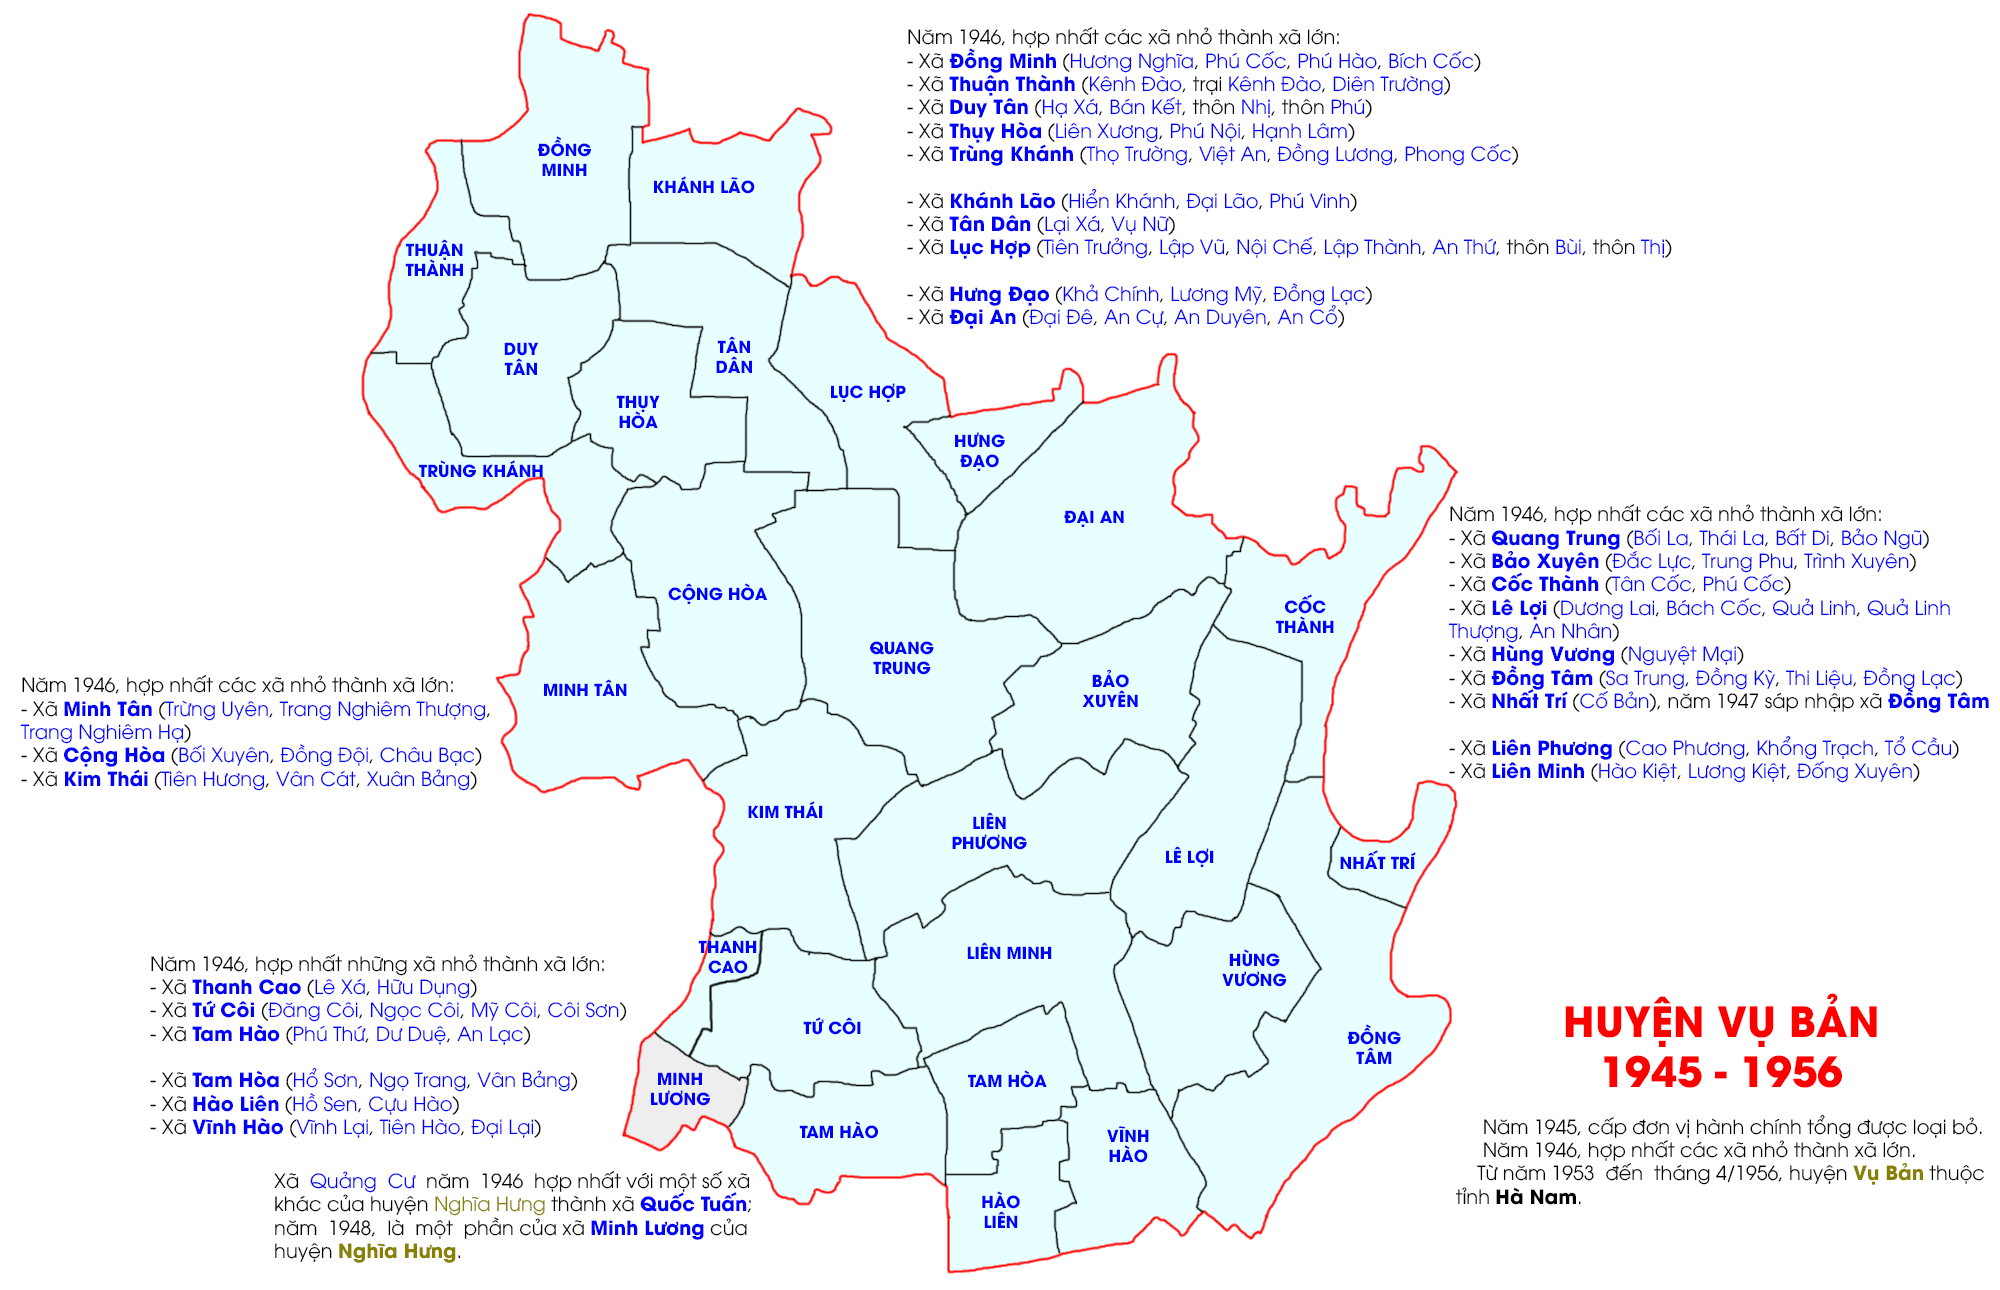 Huyện Vụ Bản từ năm 1946 đến năm 1956